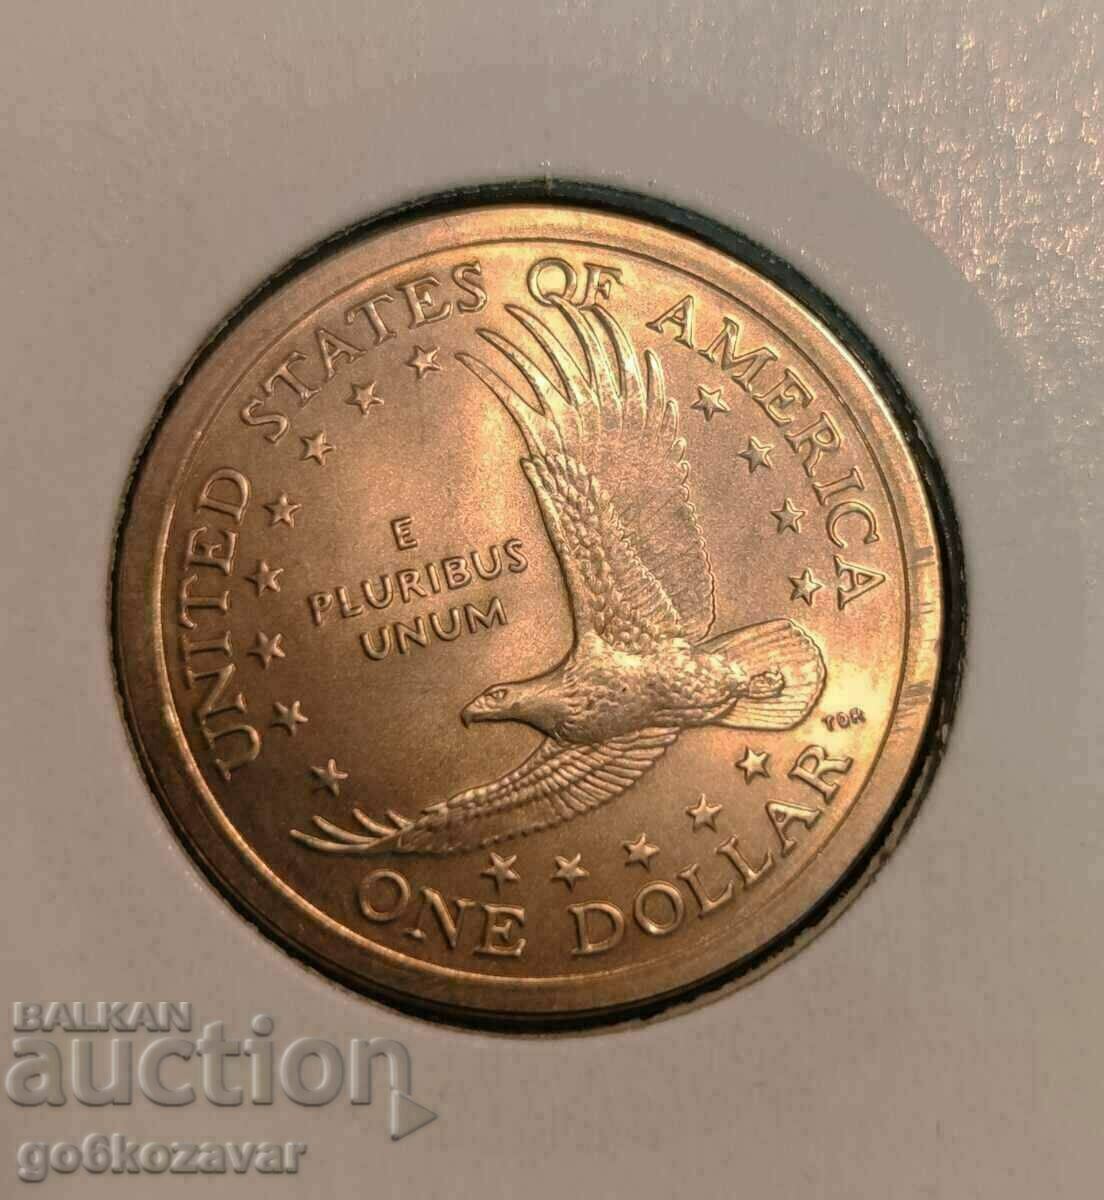 US 1 Dollar 2005 UNC